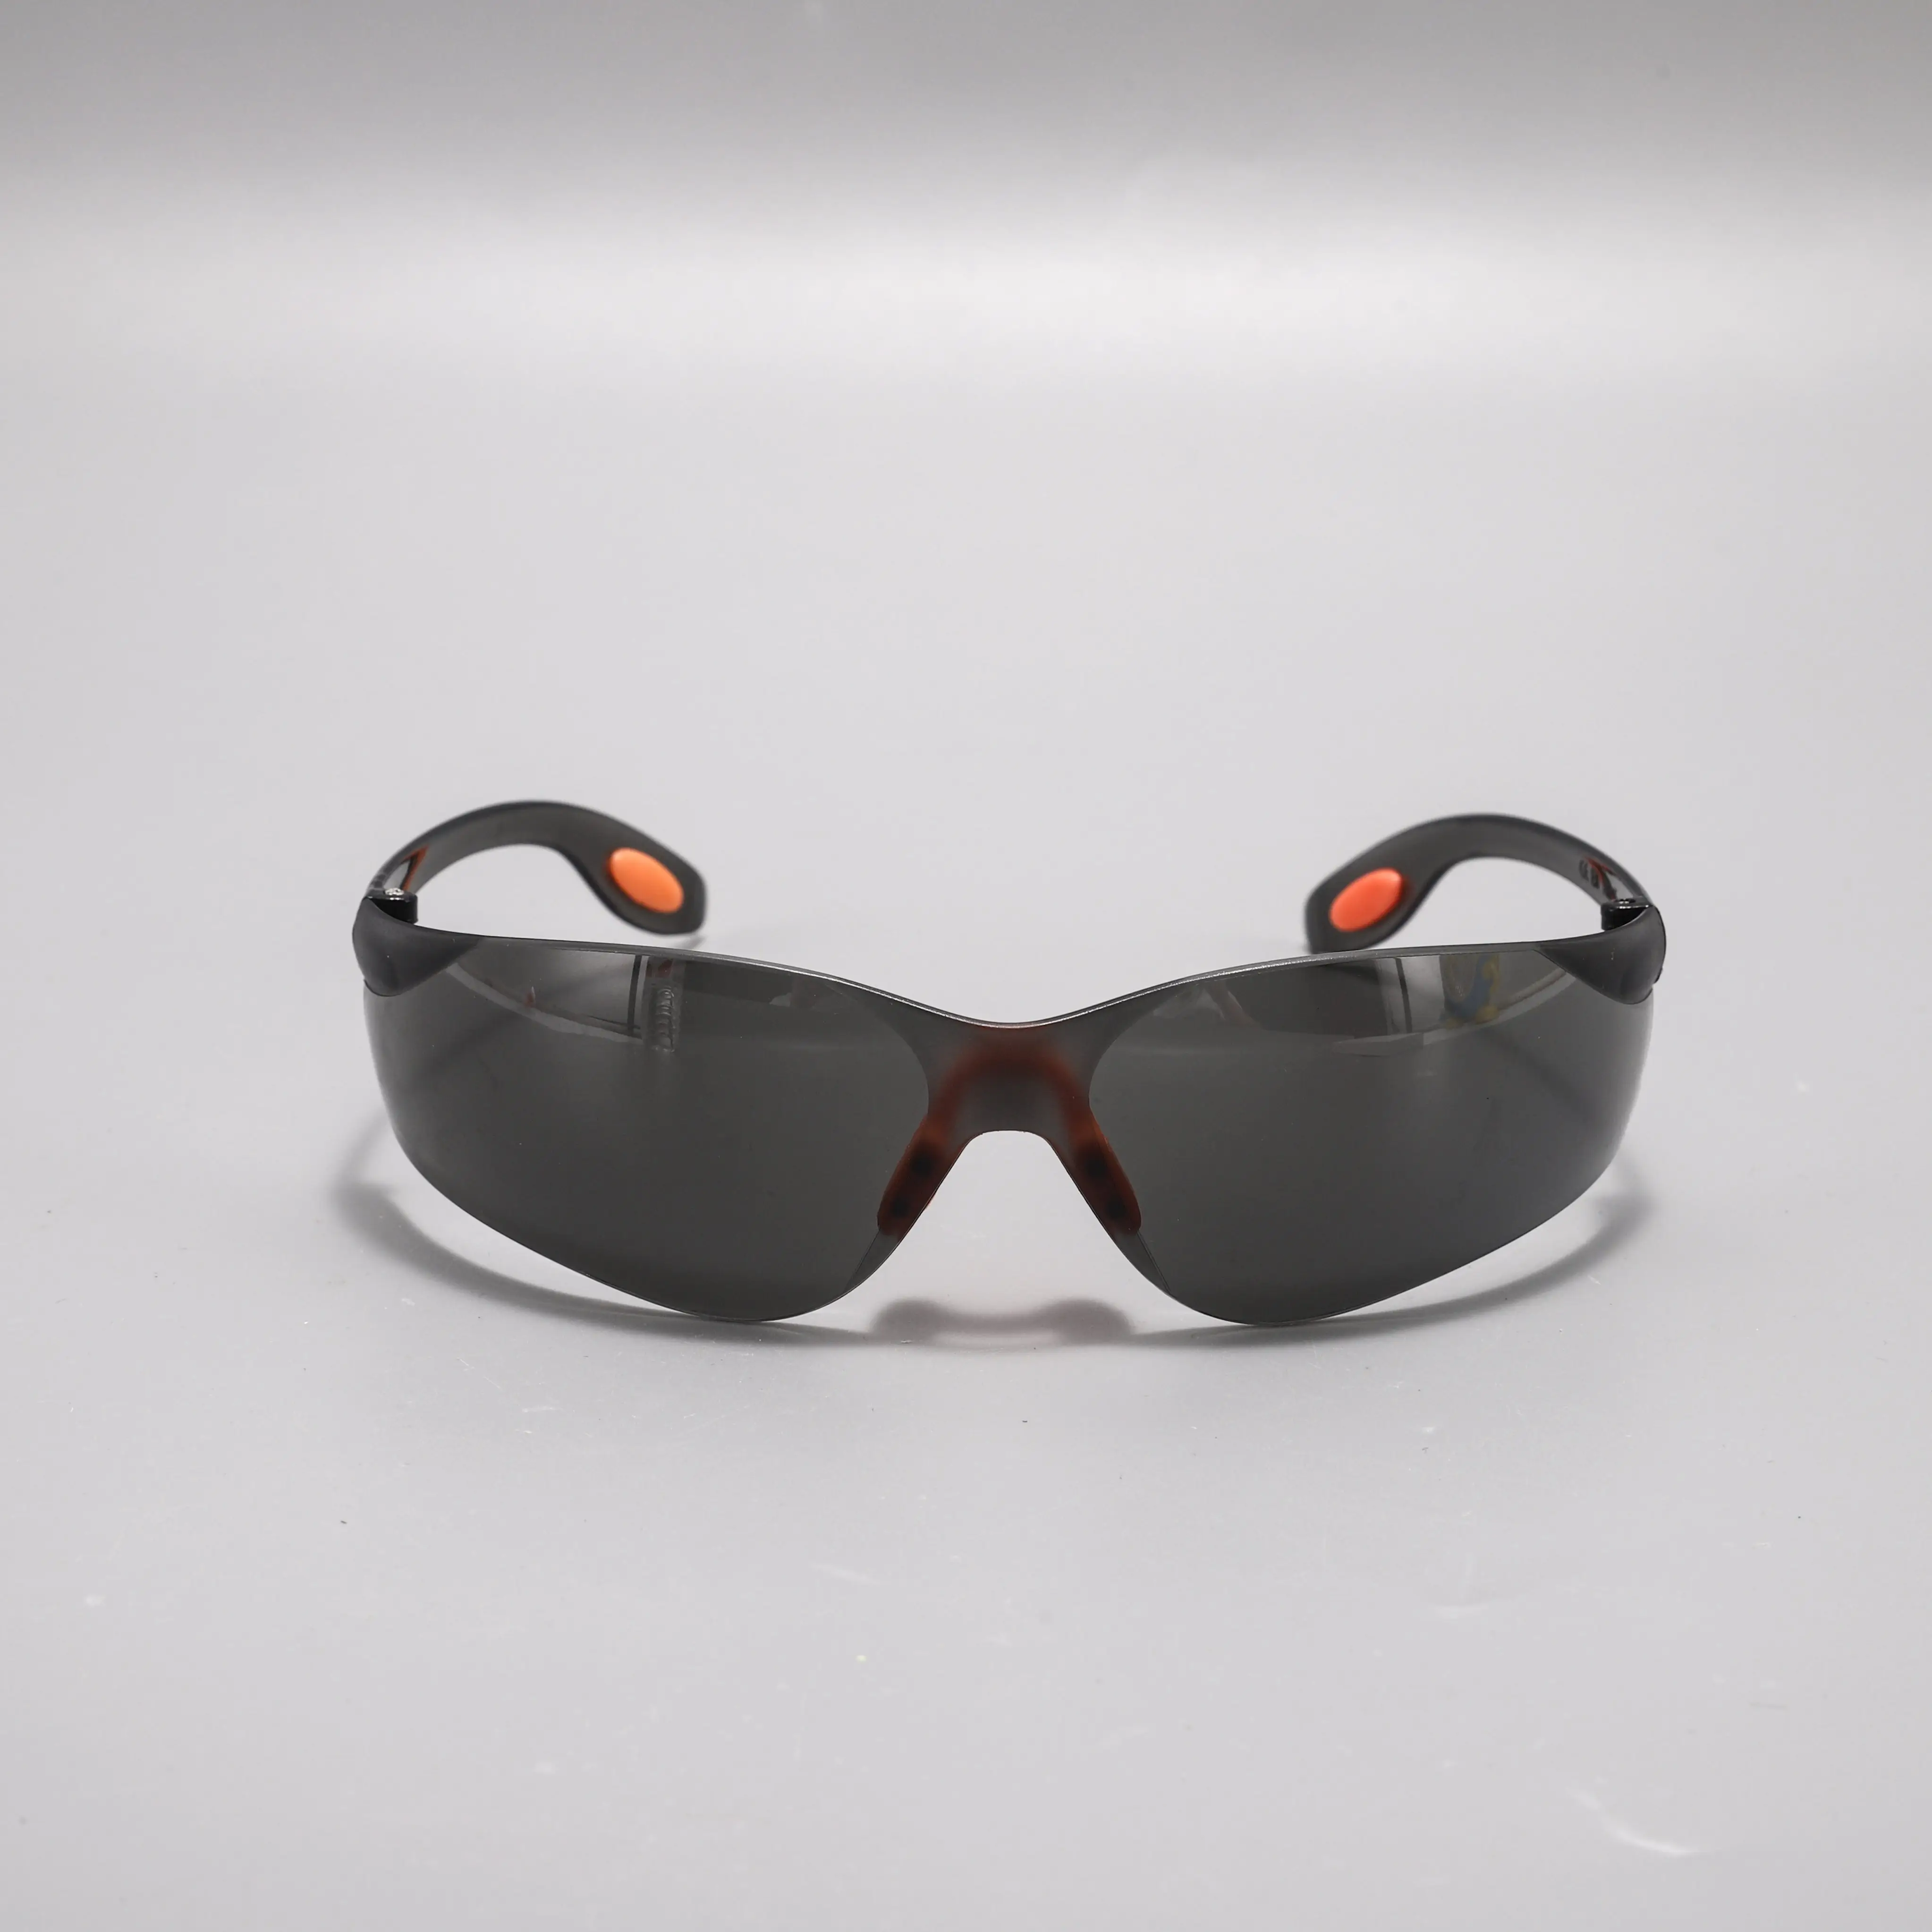 Lunettes de sécurité laser bon marché ANSI CE lunettes de protection des yeux anti-UV industrielles lunettes de soudage en plastique lunettes de protection